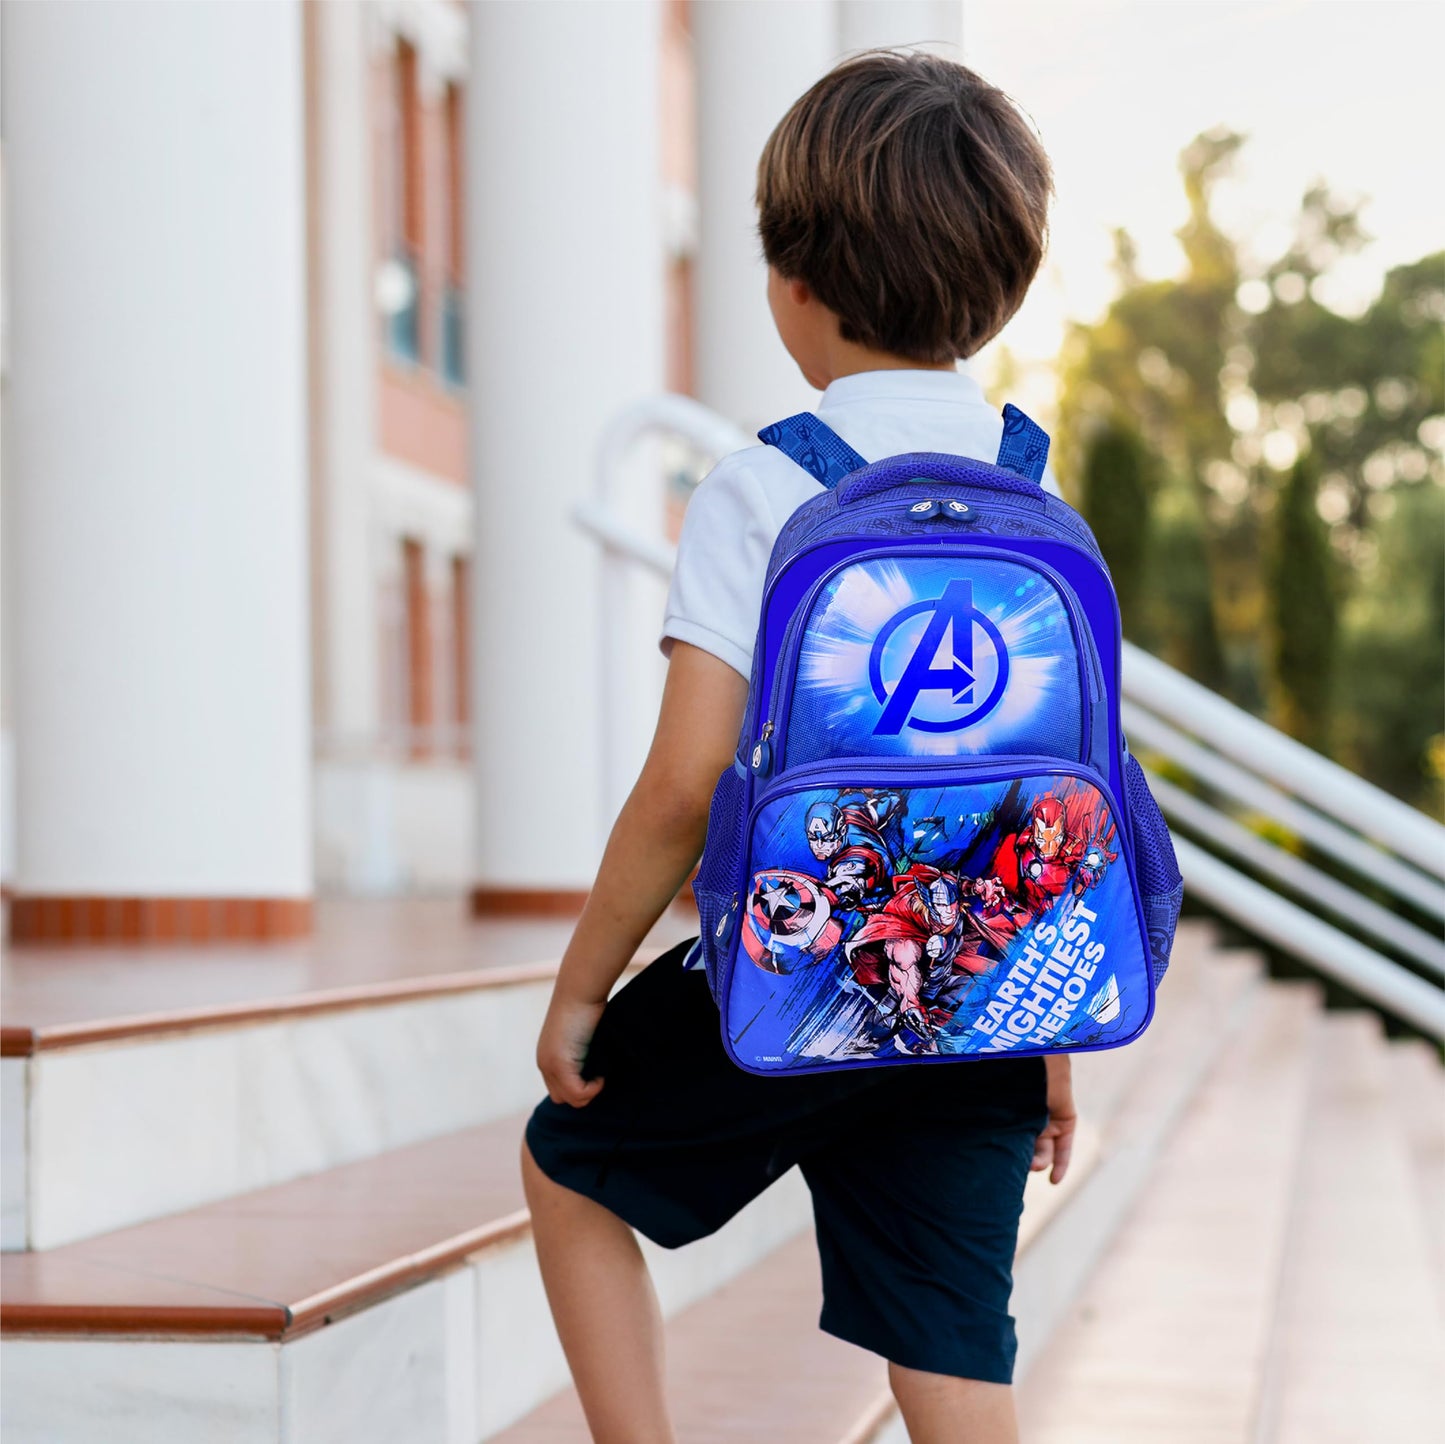 Marvel School Bags - Avengers